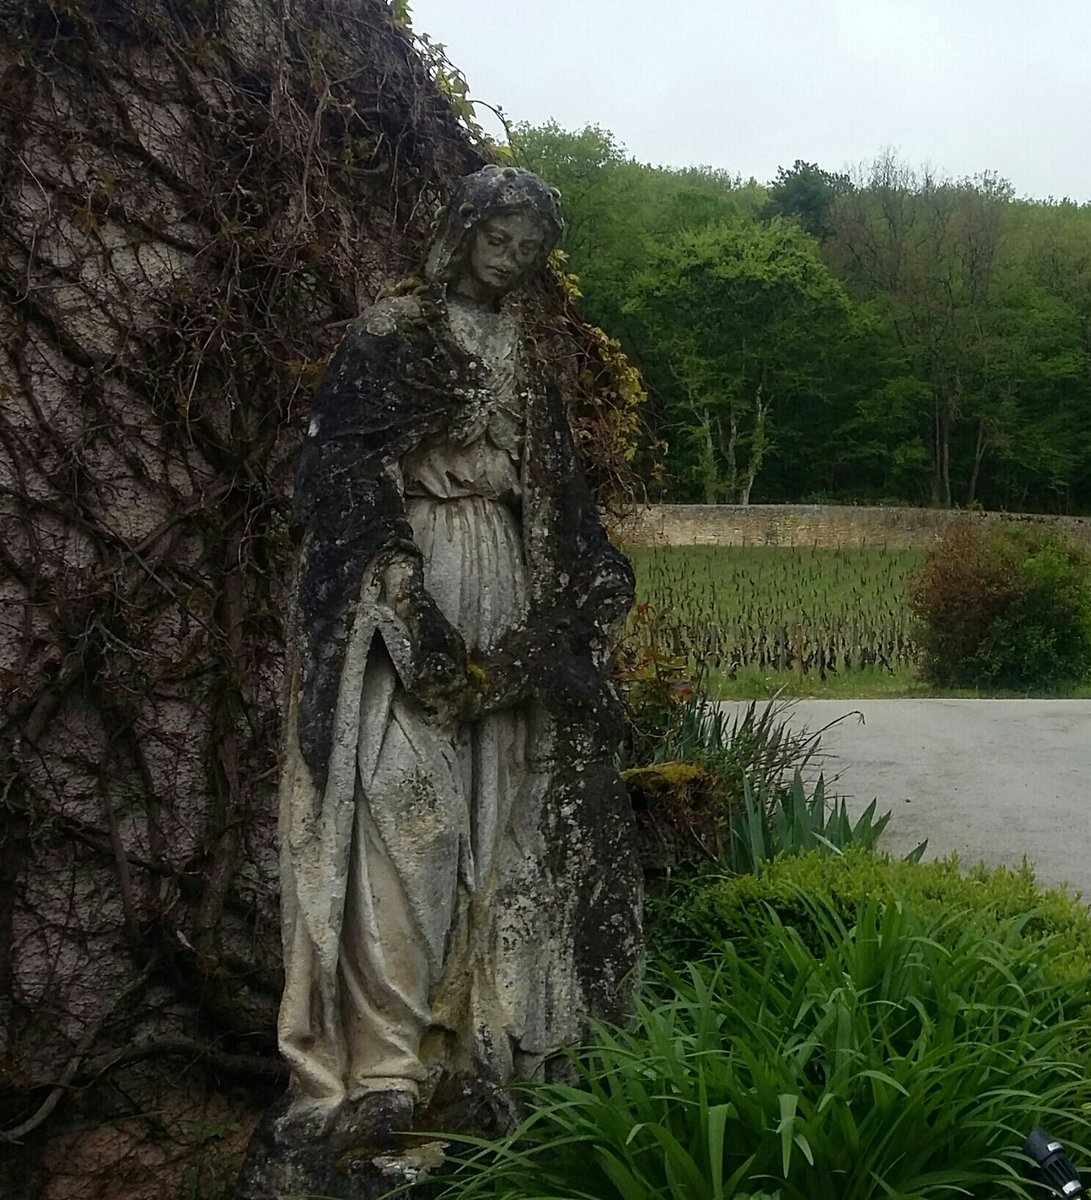 #Bourgogne #ChambolleMusigny Superbe statue, déesse de la terre,    #DomaineGeorgesRoumier, réputé ac ses mythiques #LesAmoureuses #wine #winelover